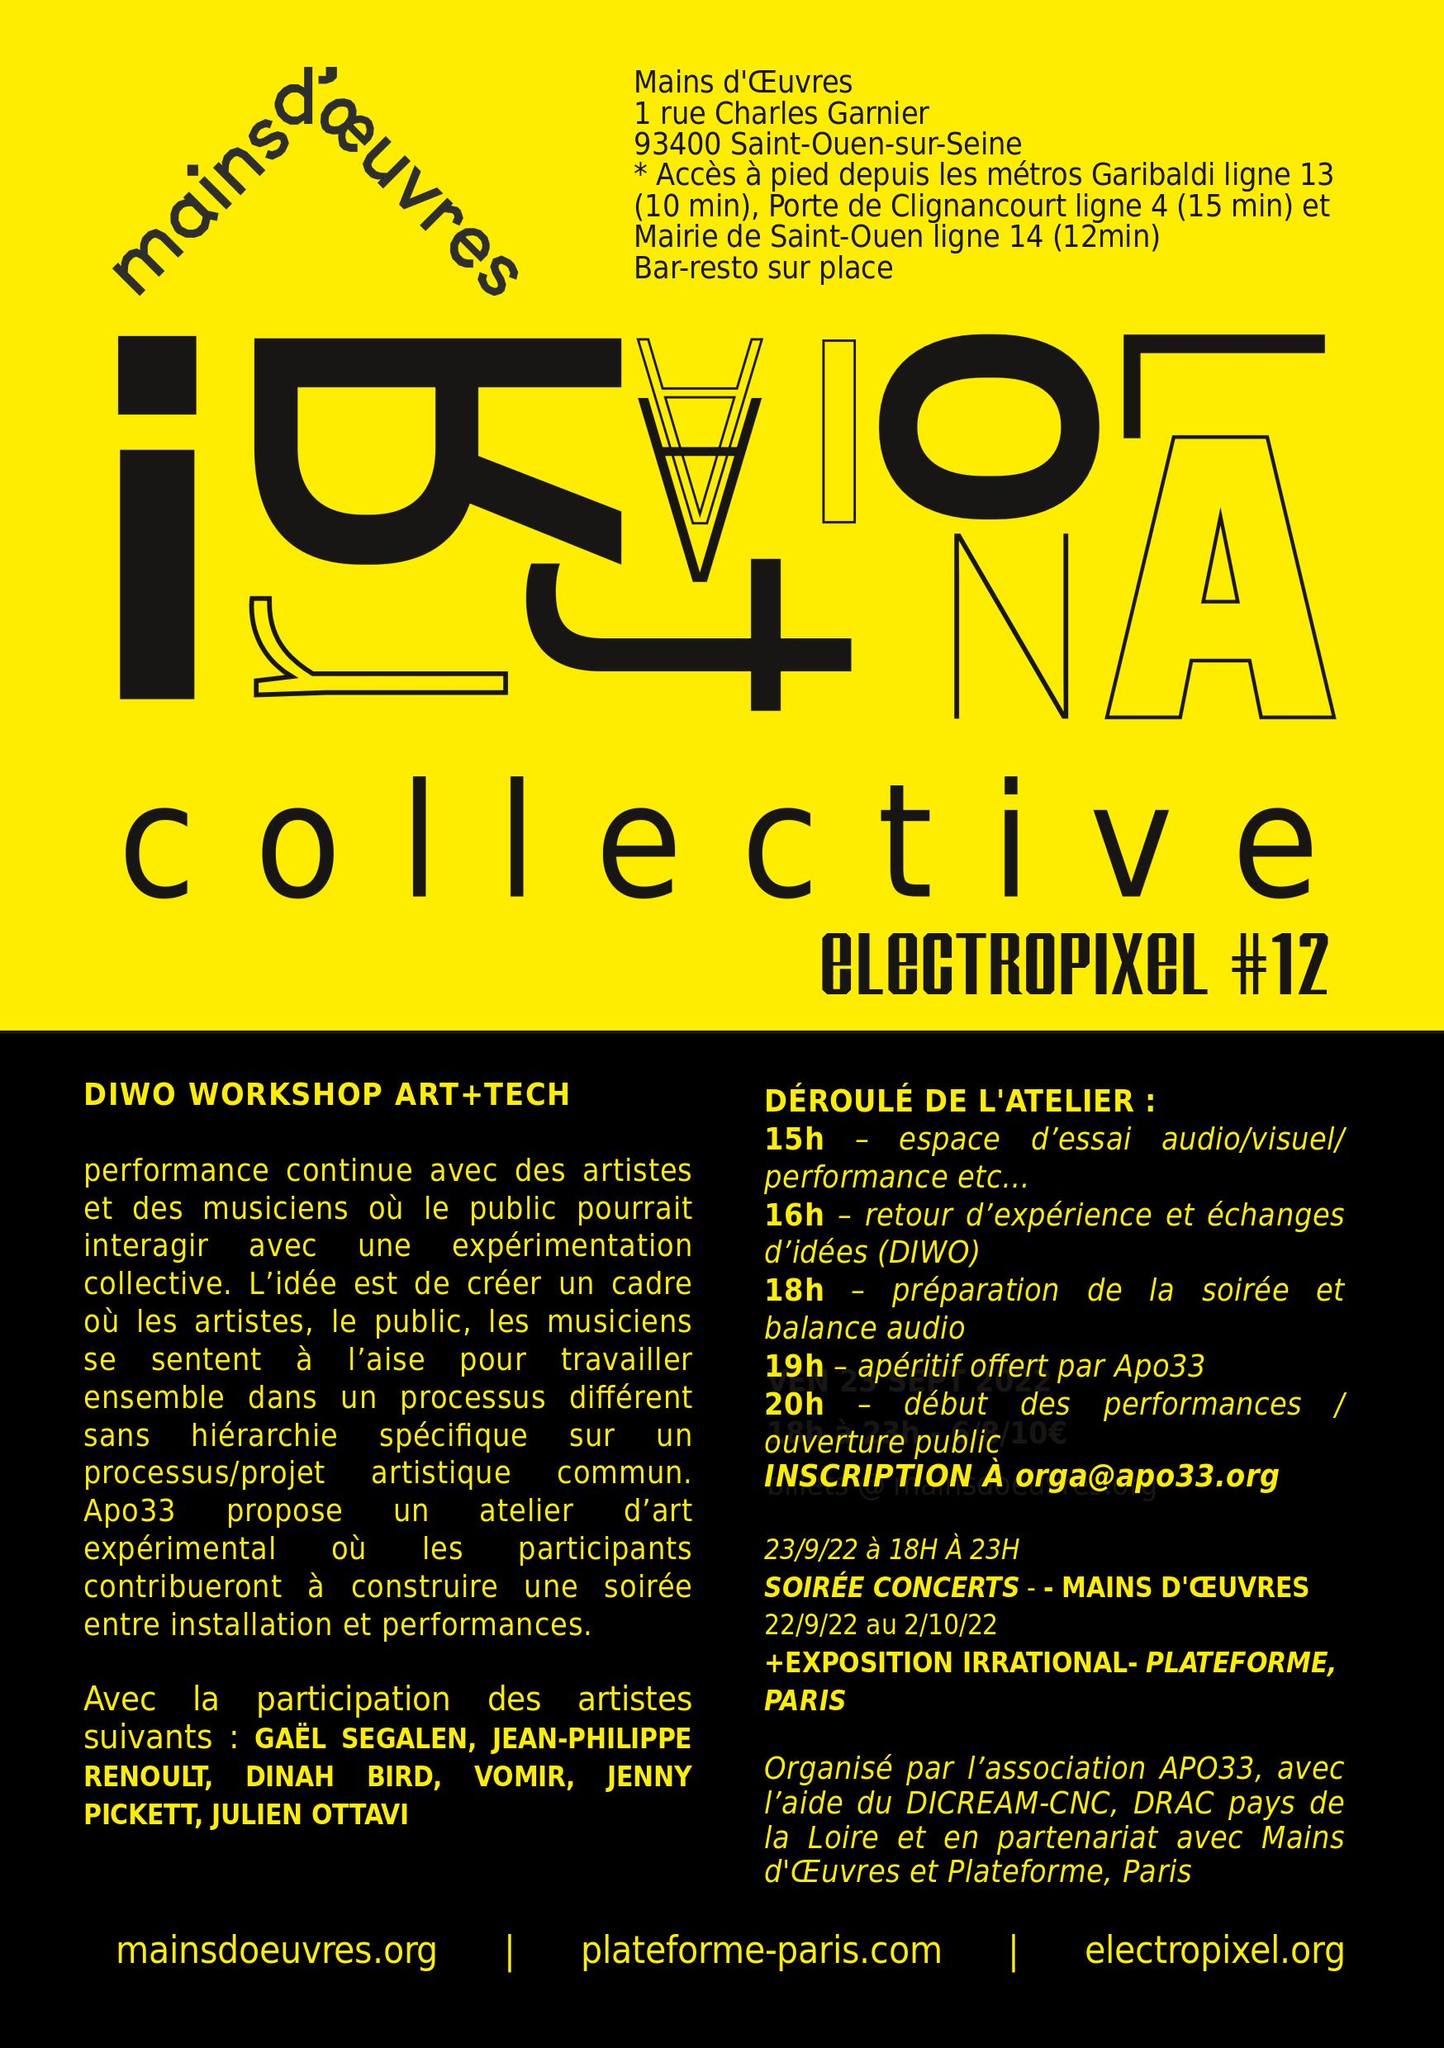 Electropixel 12 – Diwo workshop Art+tech – Mains D’oeuvres – 24 Septembre